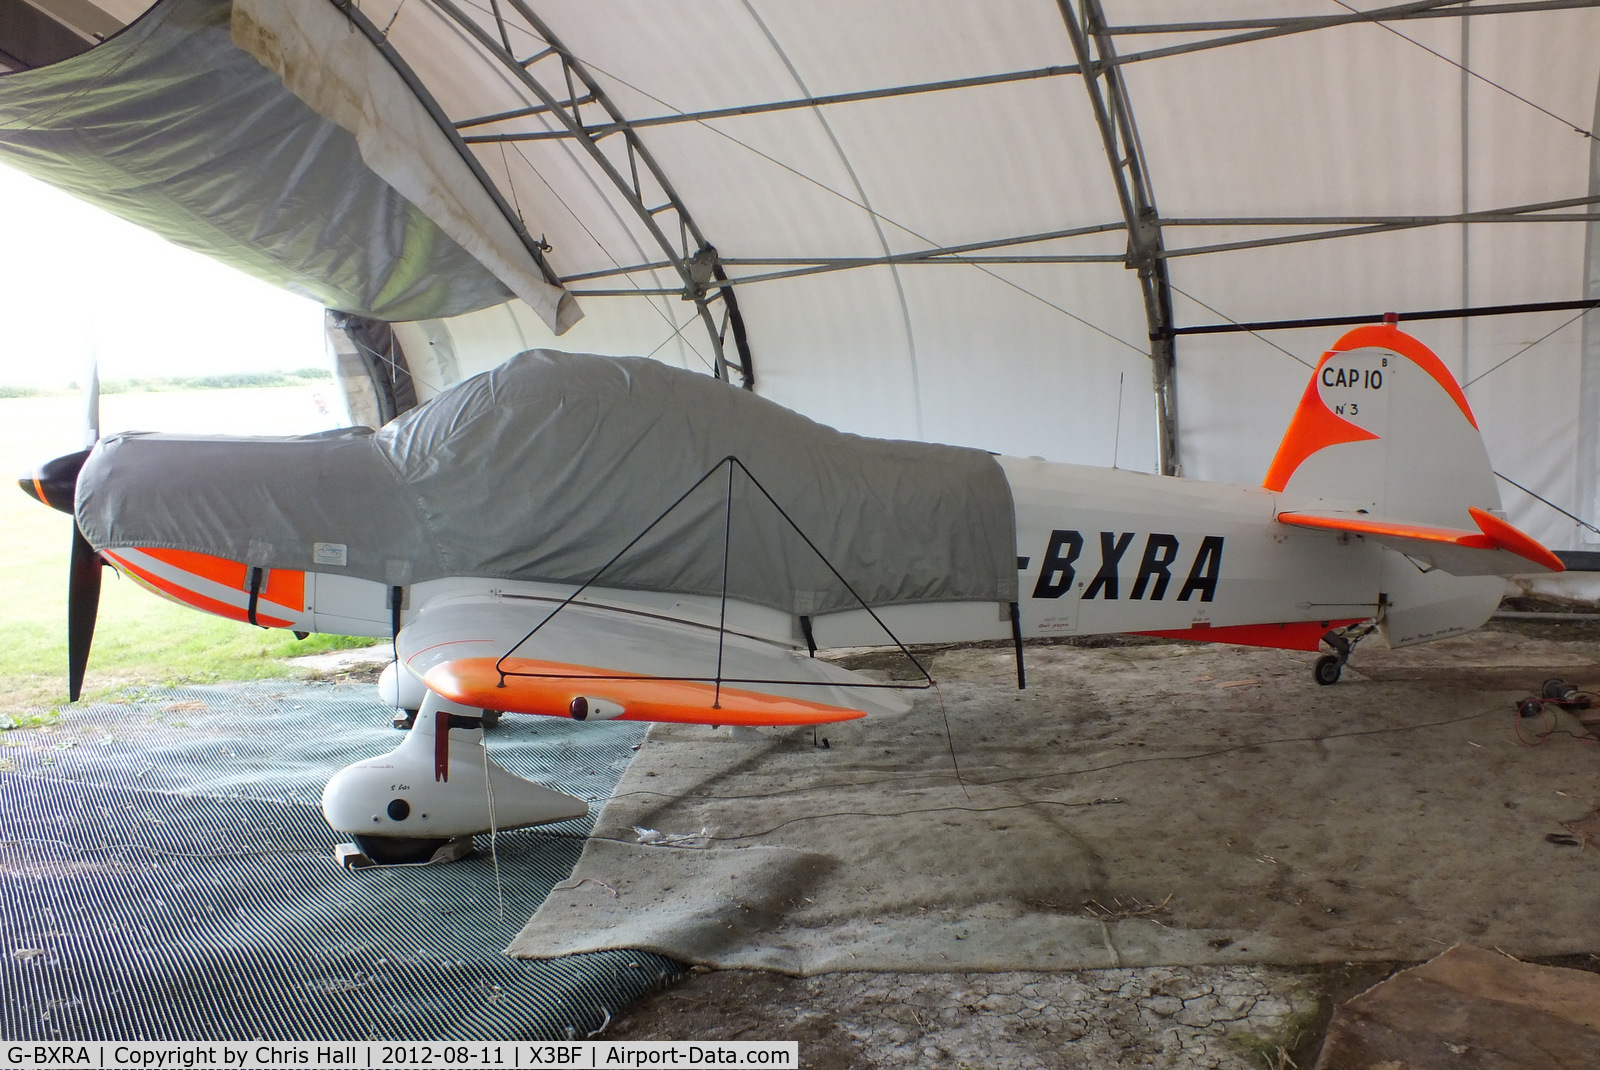 G-BXRA, 1971 Mudry CAP-10B C/N 3, at Bidford Airfield